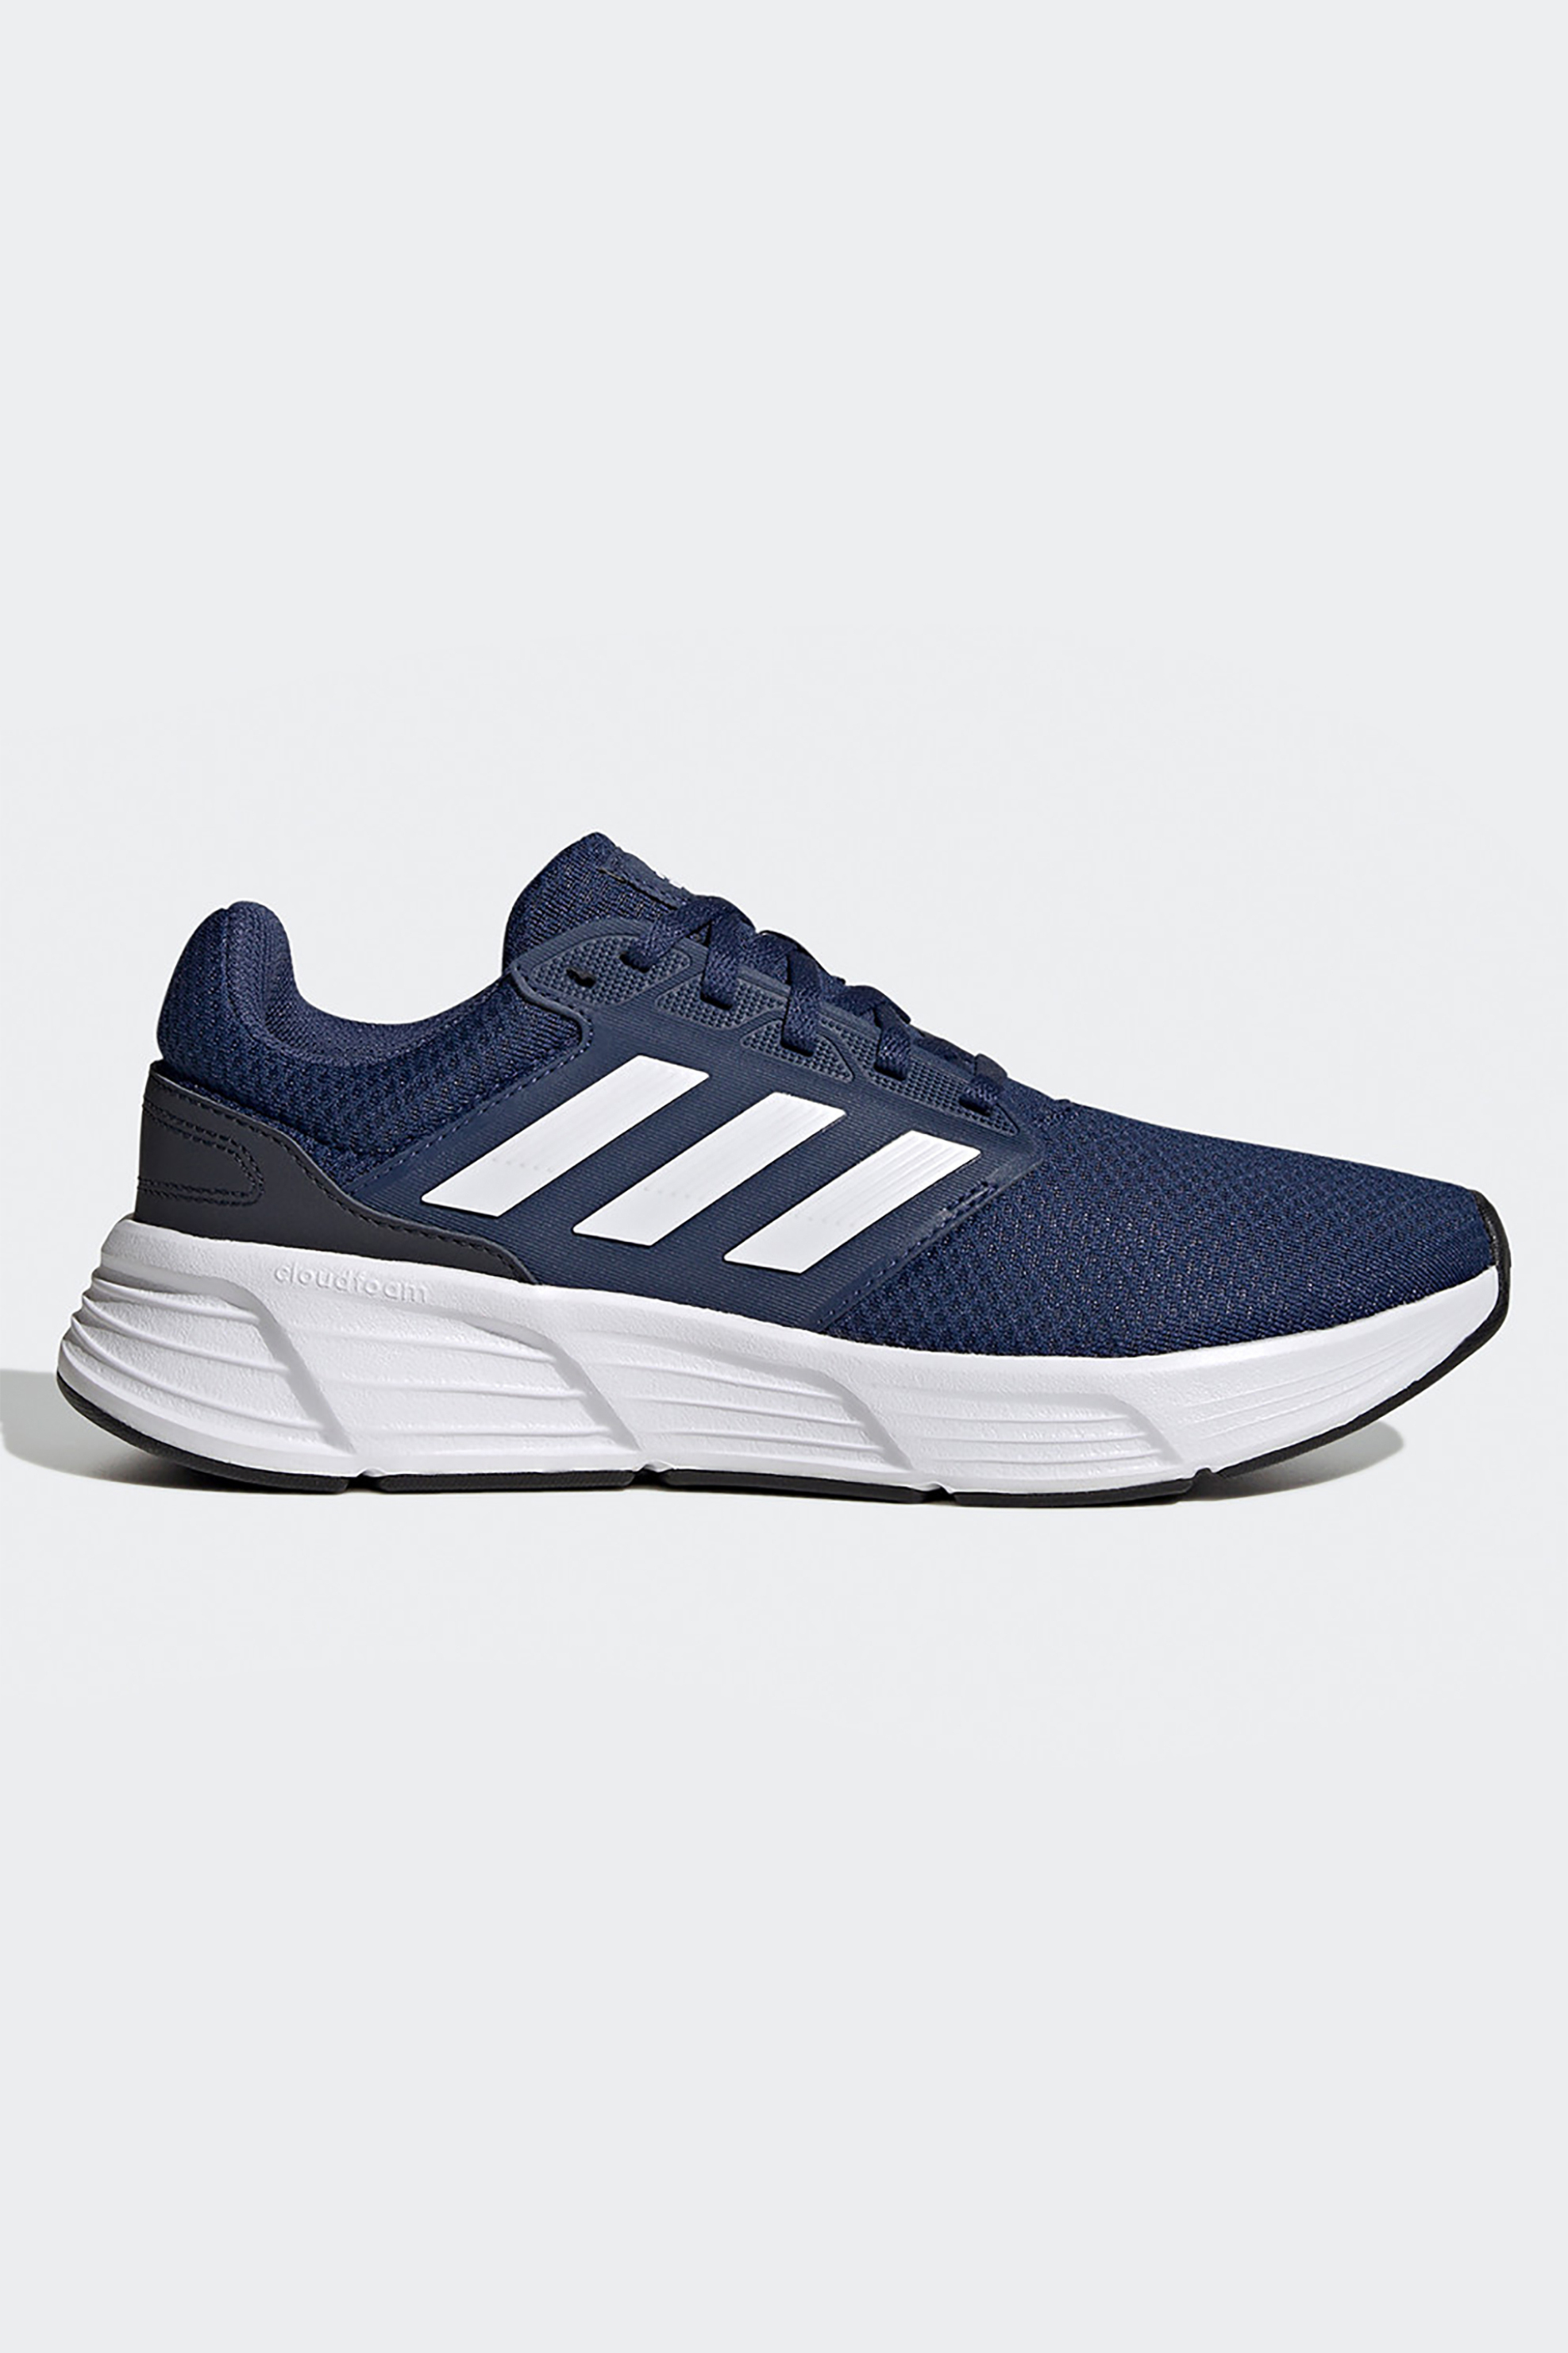 Ανδρική Μόδα > Ανδρικά Αθλητικά > Ανδρικά Αθλητικά Παπούτσια > Ανδρικά Αθλητικά Παπούτσια για Τρέξιμο Adidas ανδρικά αθλητικά παπούτσια running "Galaxy 6" - GW4139 Μπλε Σκούρο